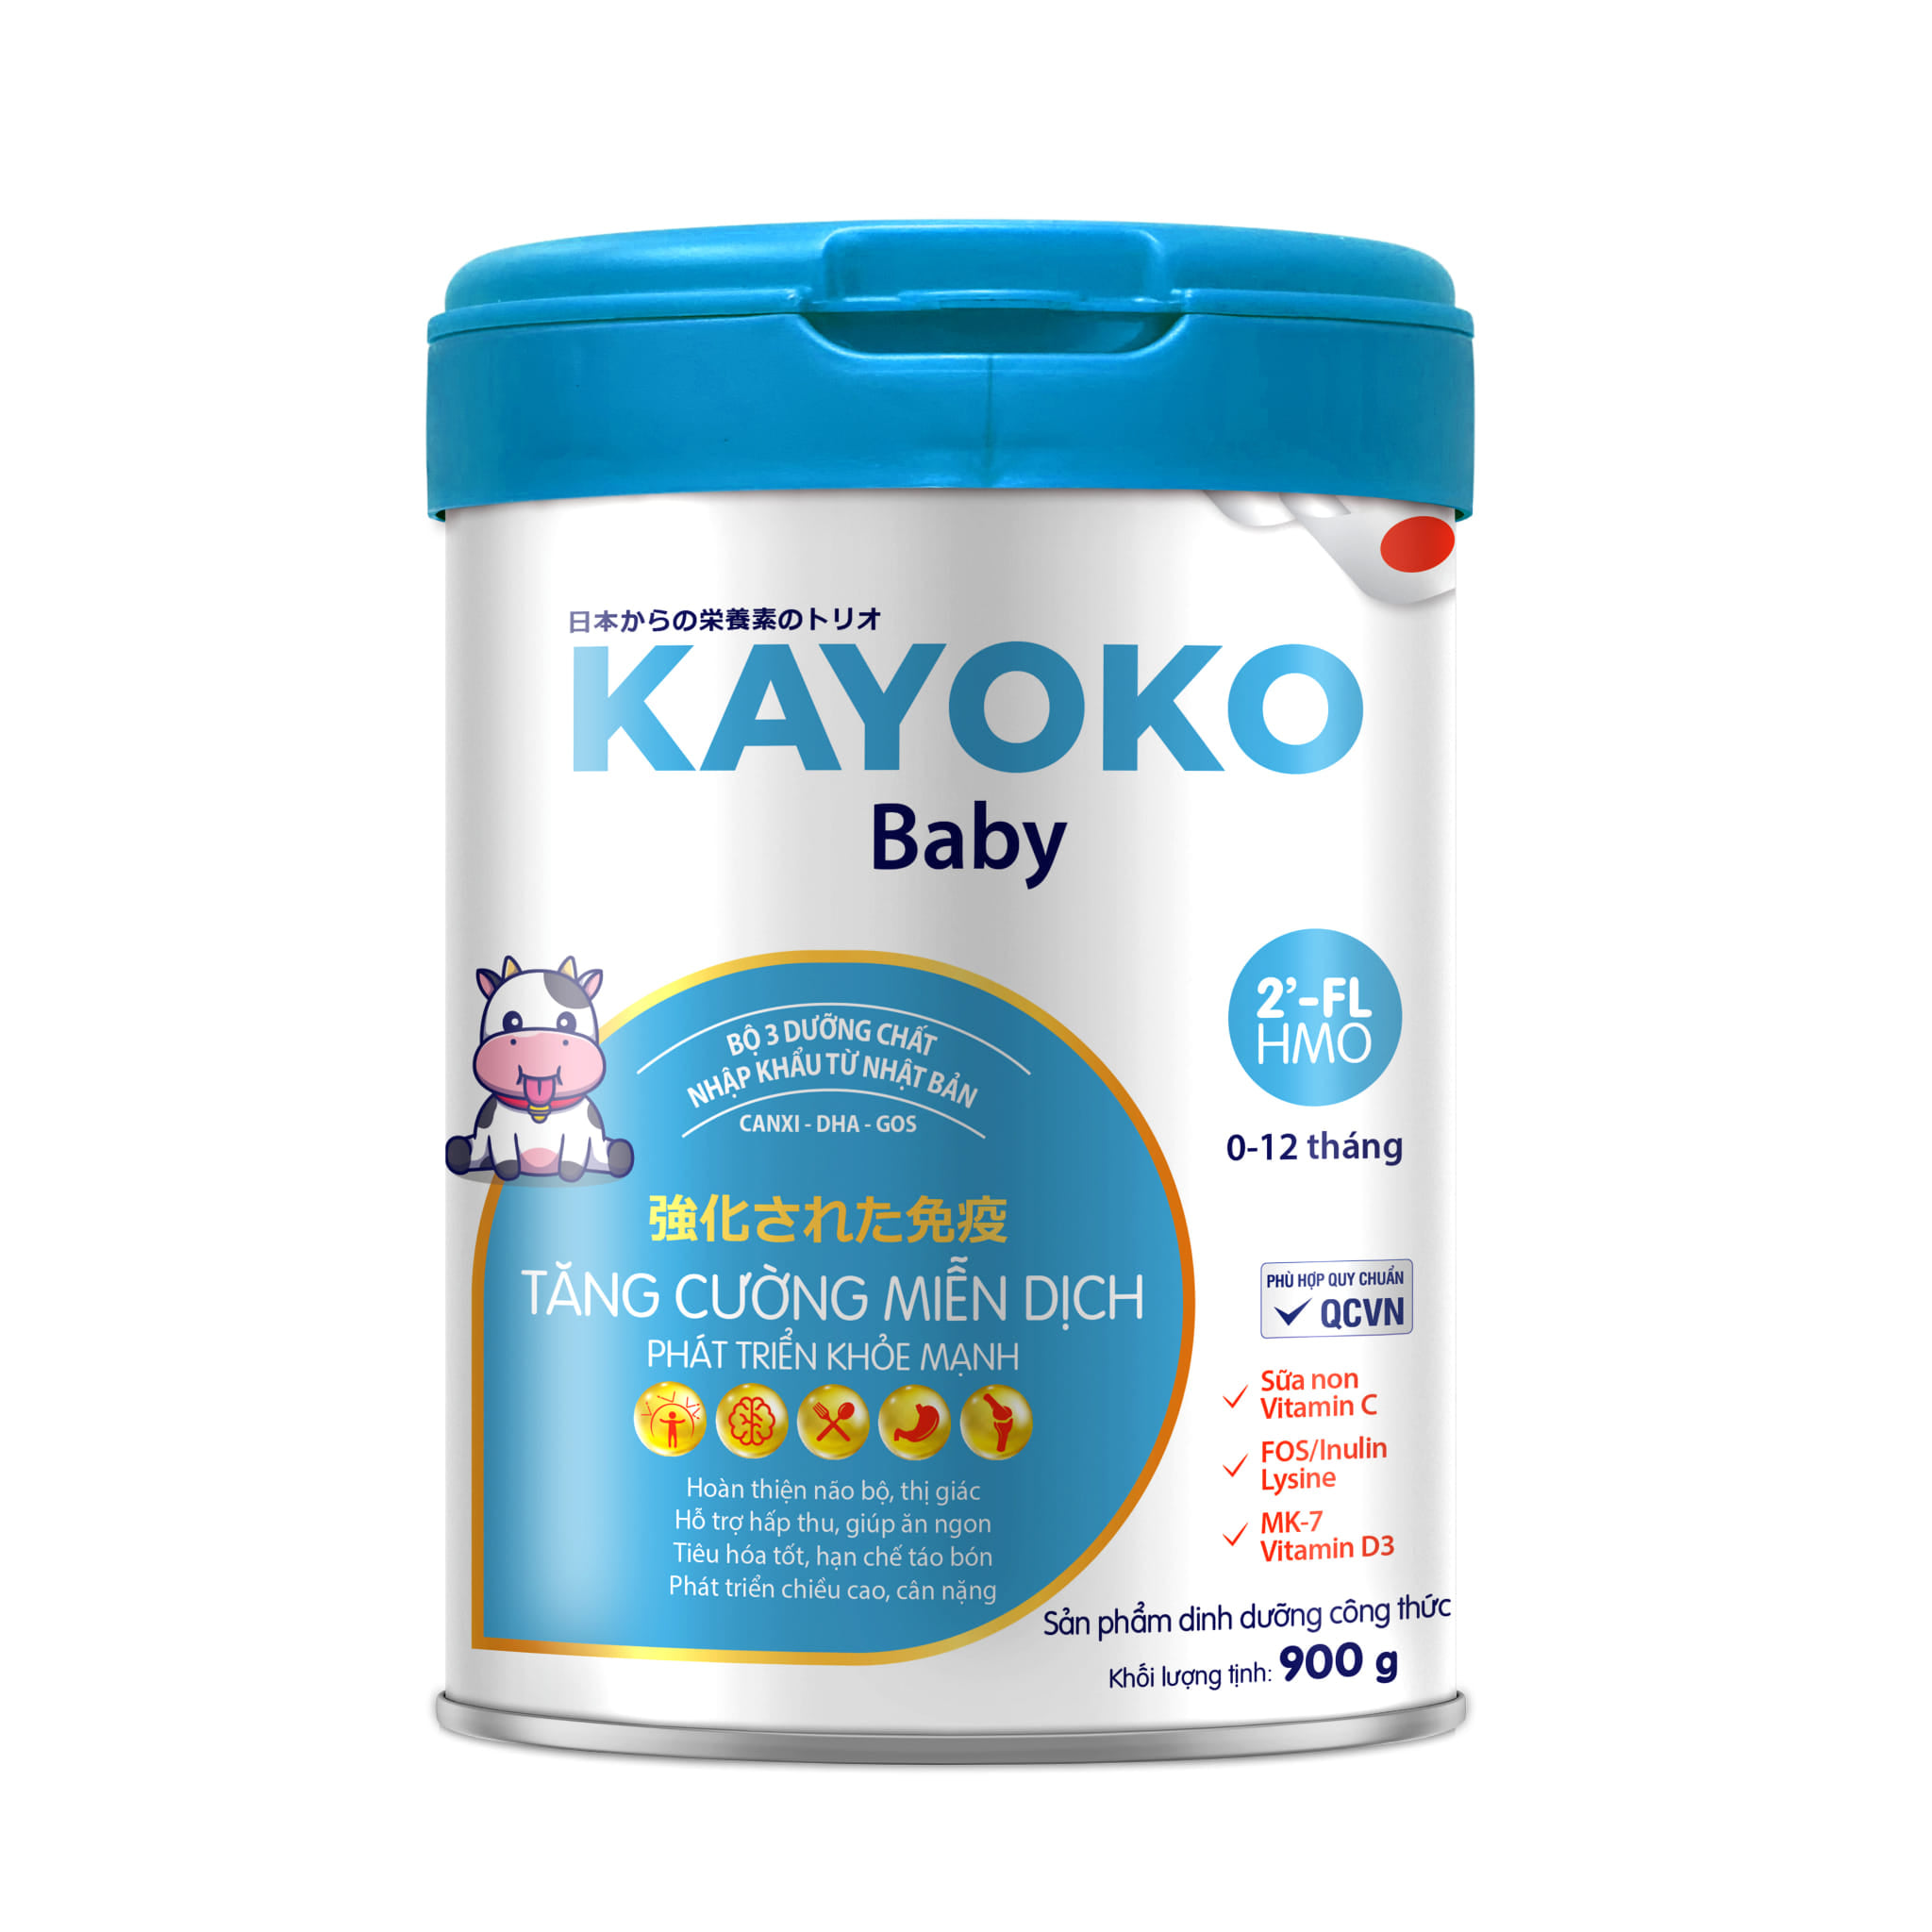 Sữa Kayoko Baby Công Nghệ Nhật (date mới)